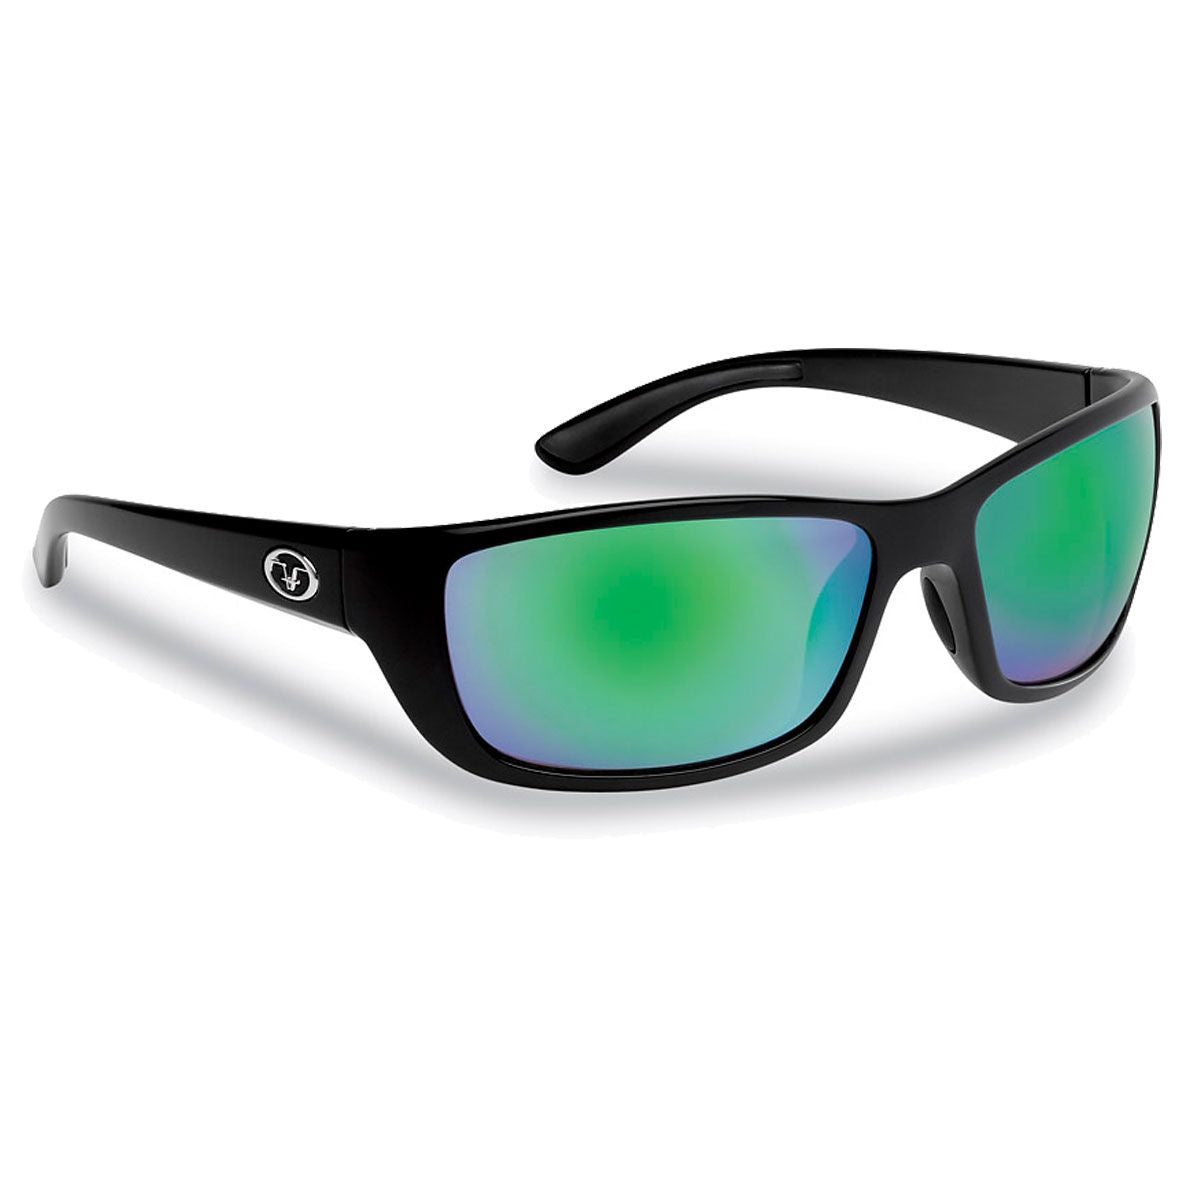 Flying Fisherman Cay Sal Polarized Shatterproof Sunglasses - Sportsman Gear